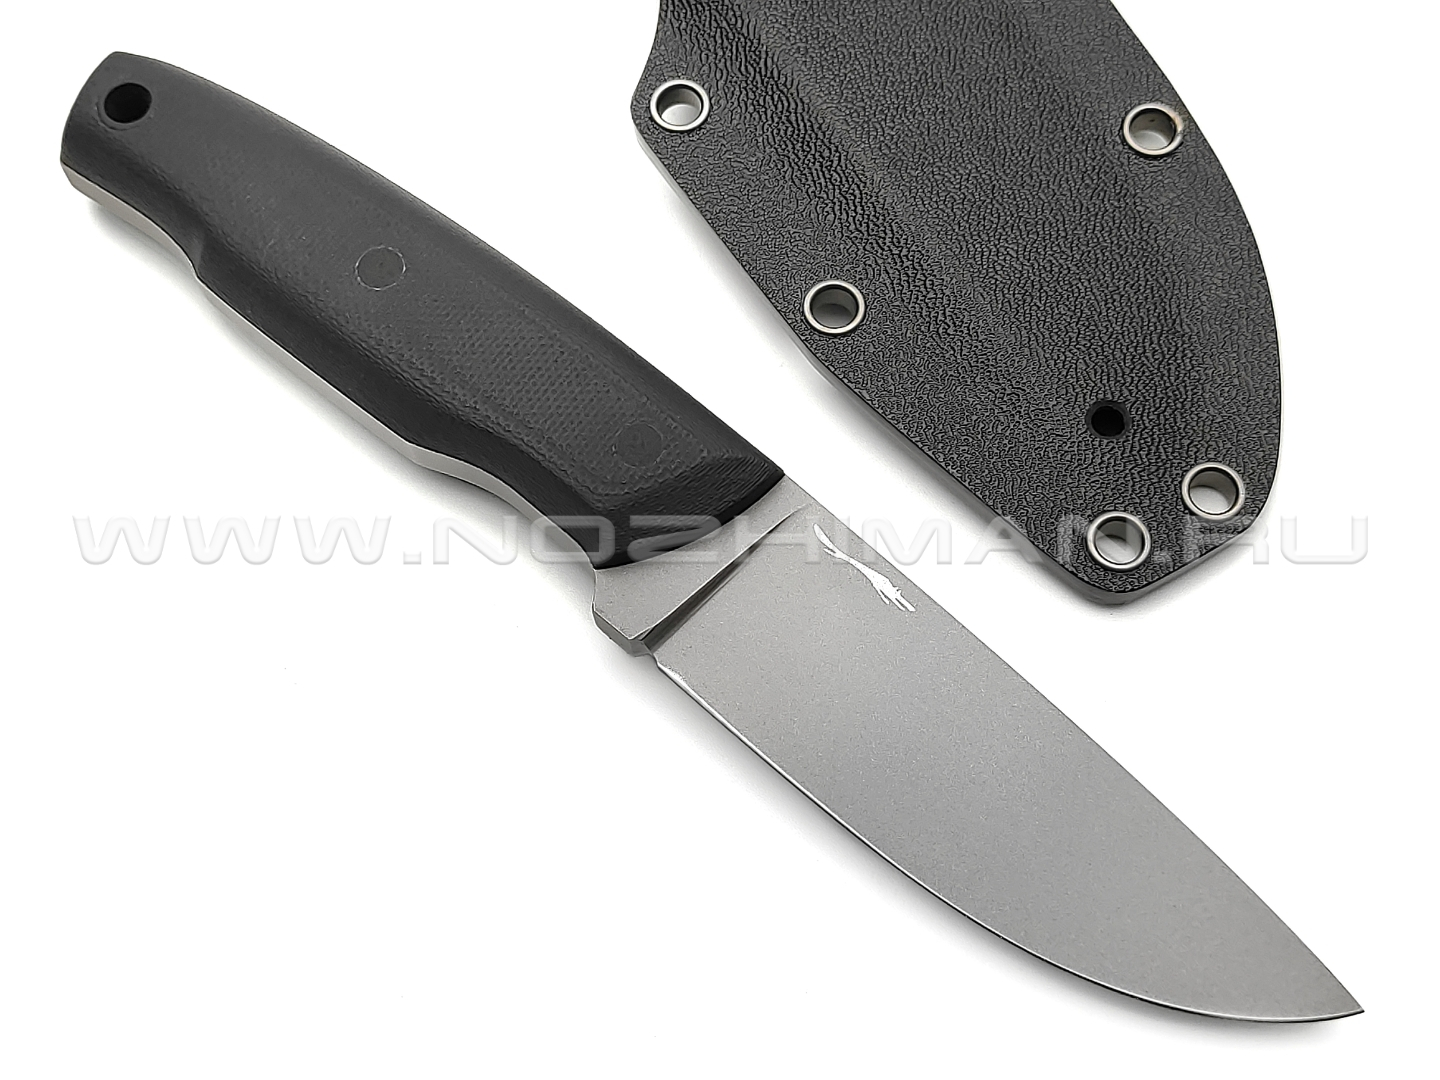 Волчий Век нож Прототип сталь PGK WA bead-blast, рукоять G10 black